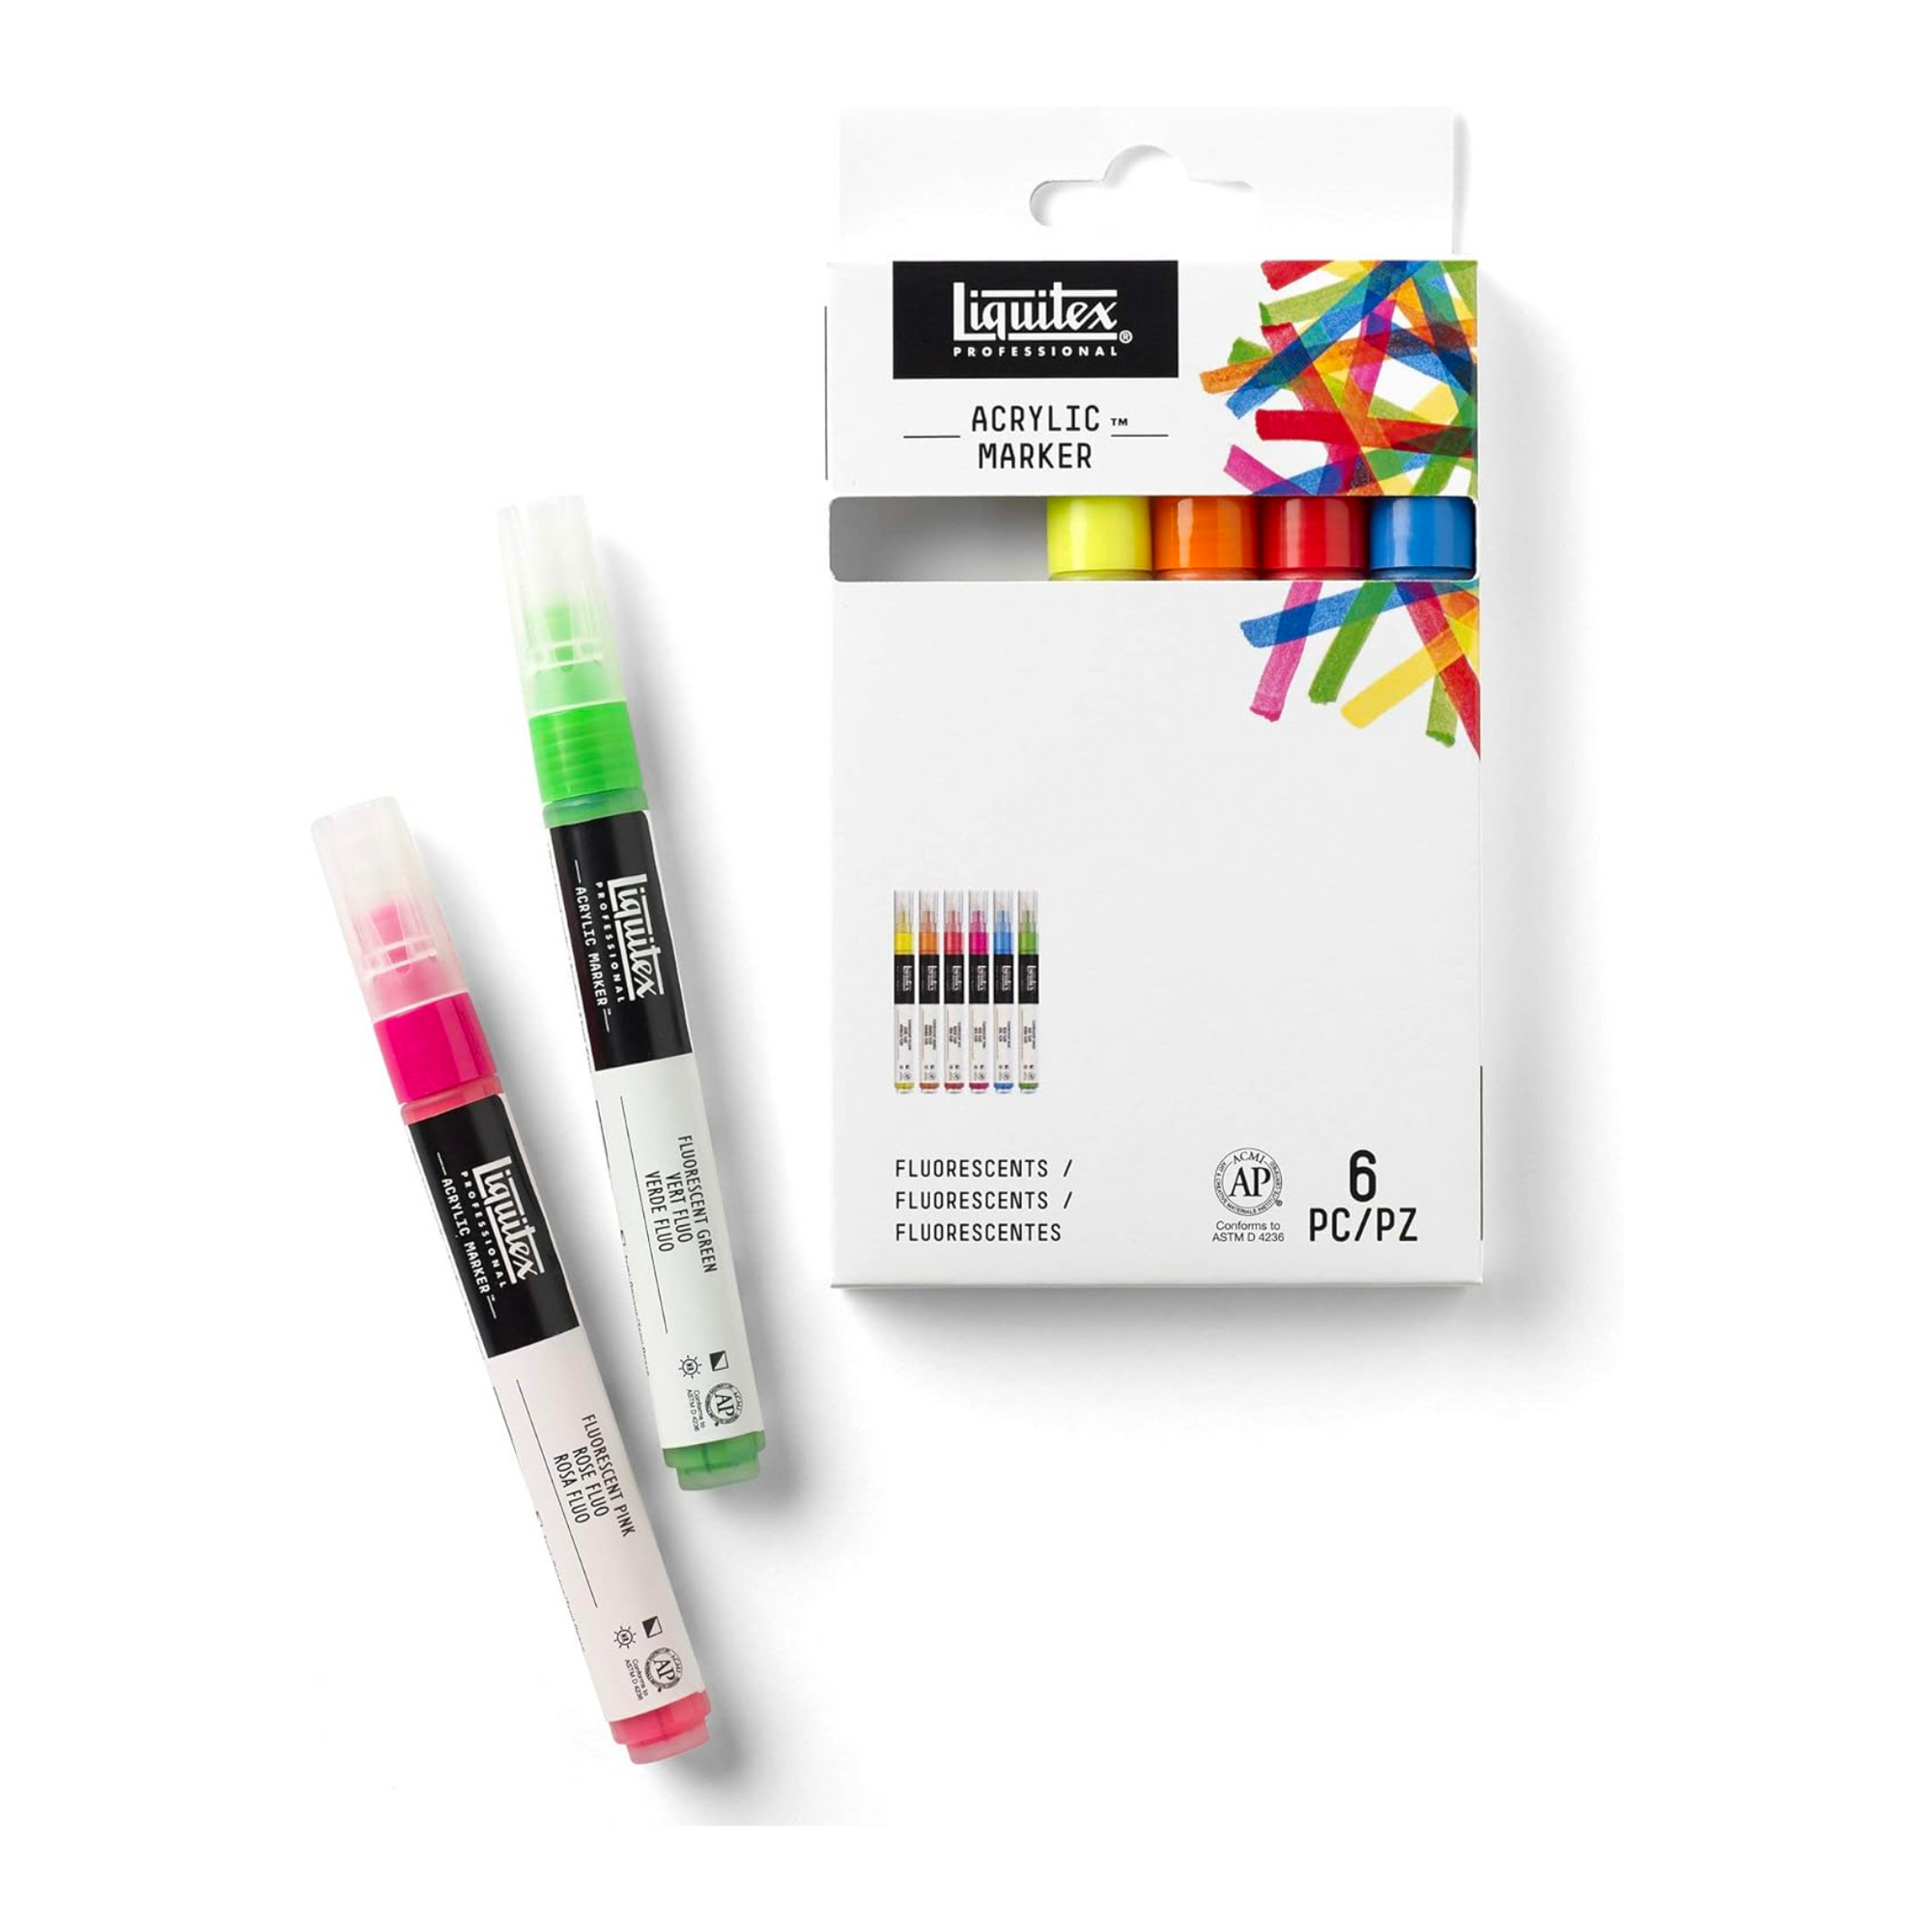 Liquitex Professional Paint Marker Set, 6 Piece, Fluorescents